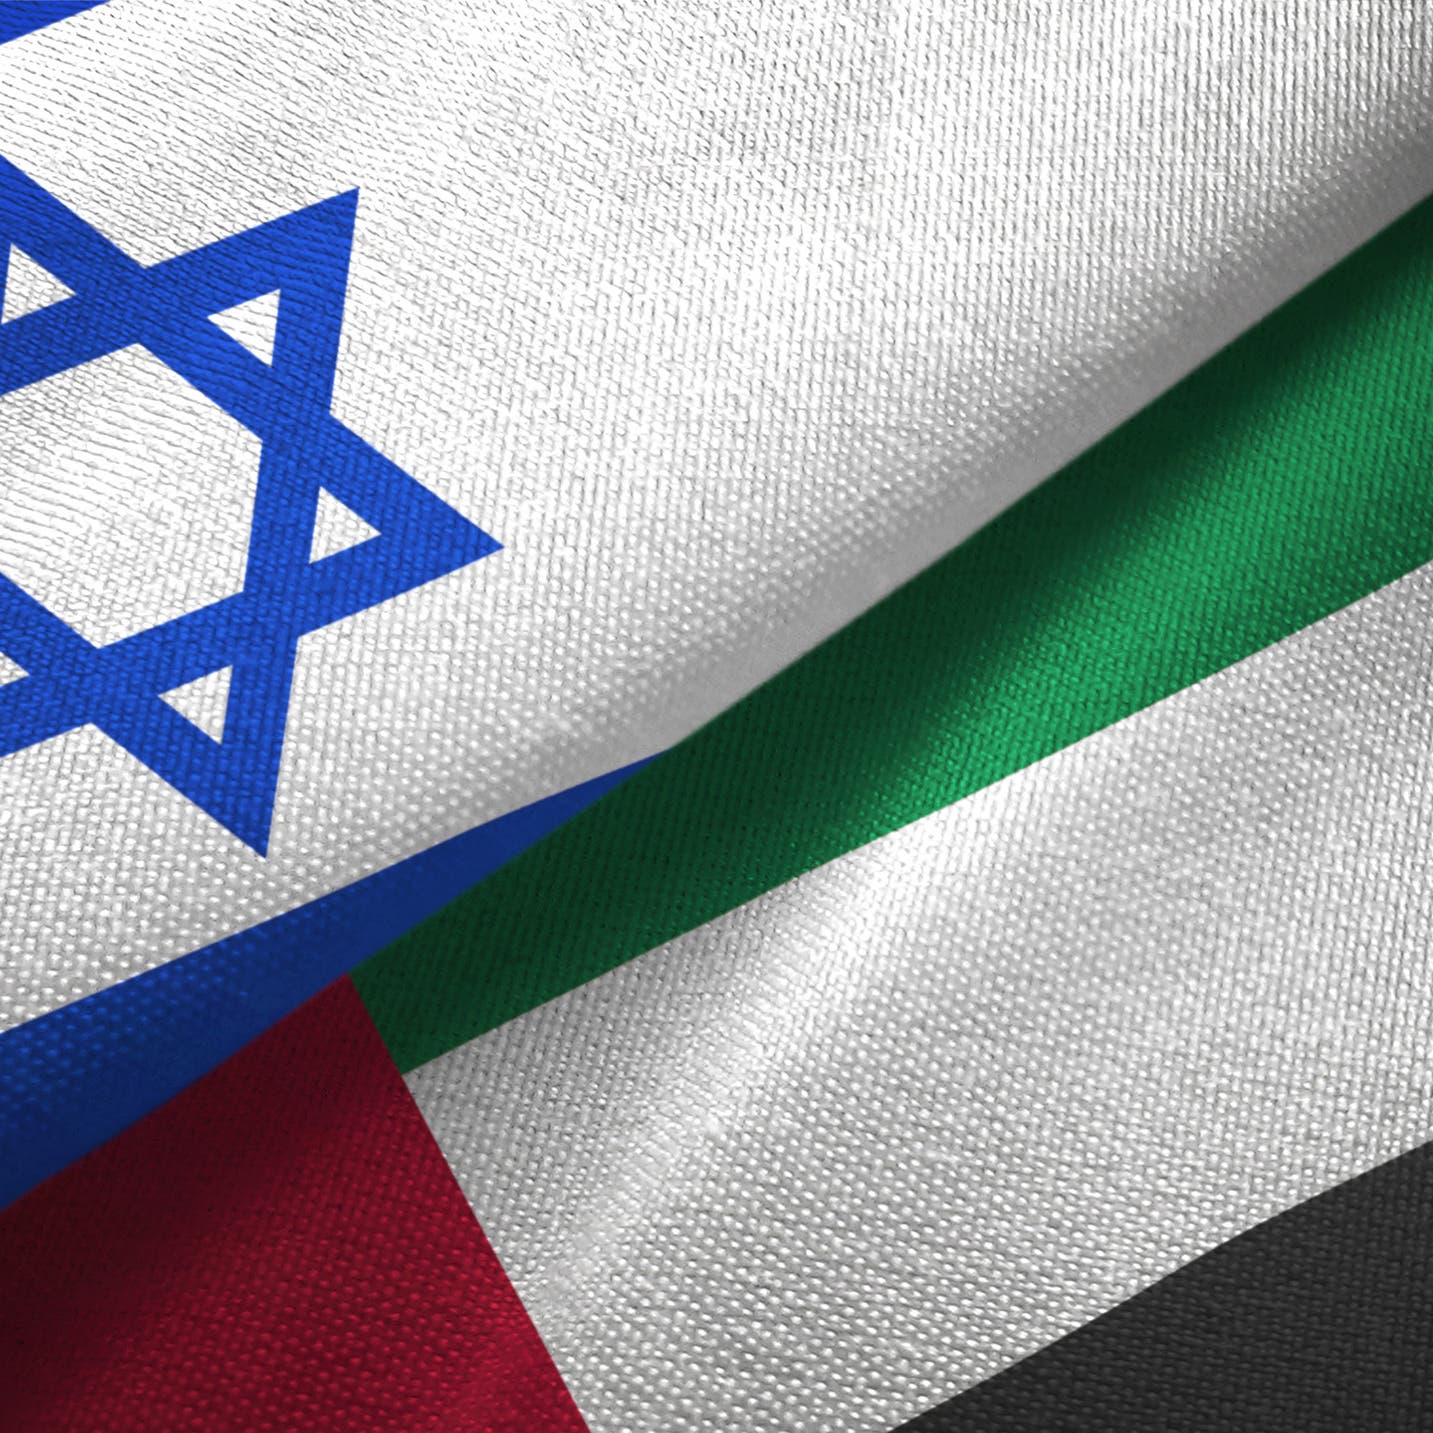 الإمارات تلغي قانون مقاطعة إسرائيل وتسمح بتبادل تجاري